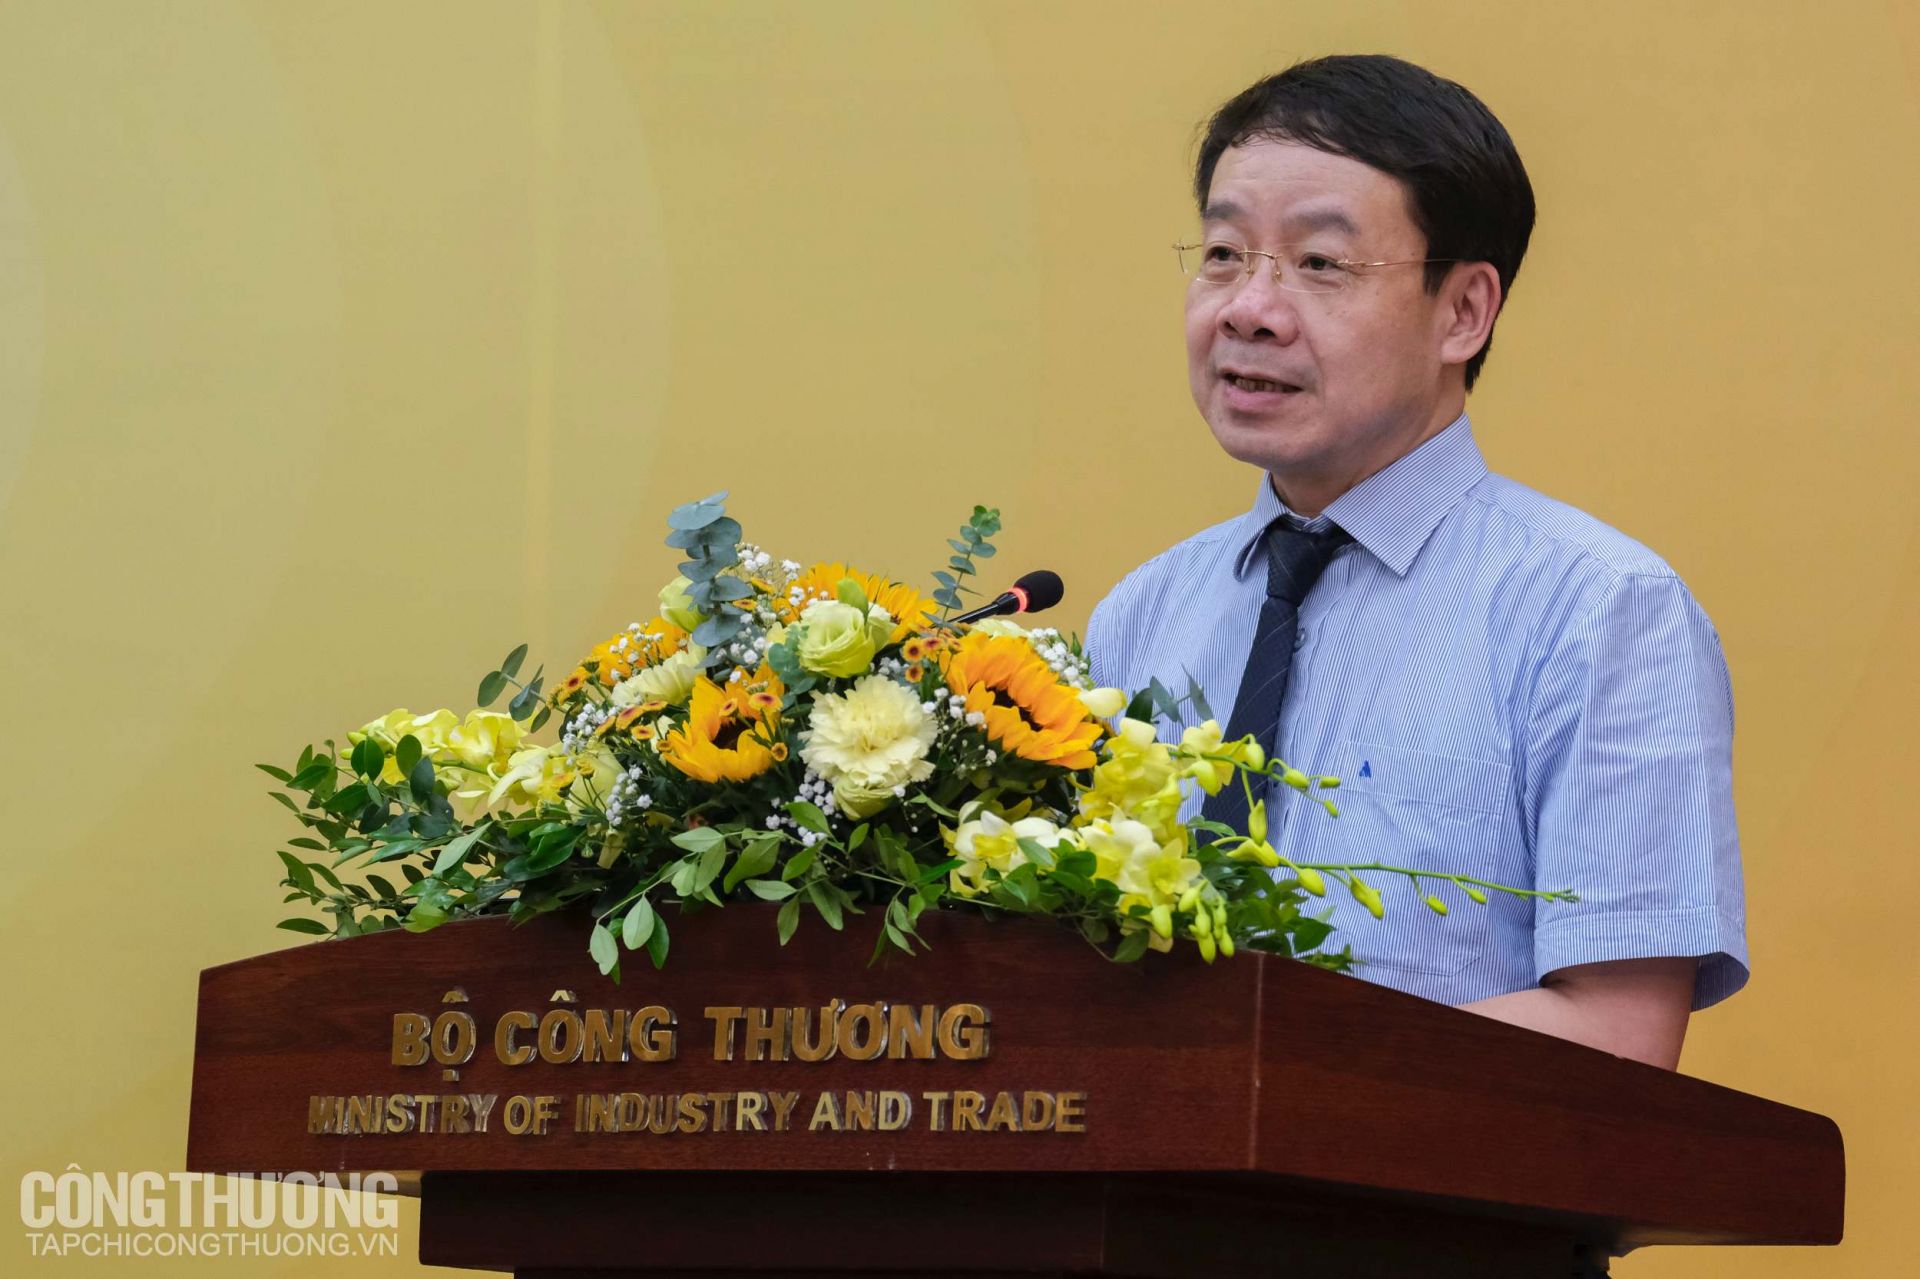 Đồng chí Lý Quốc Hùng - Phó Bí thư Đảng uỷ Bộ Công Thương, Vụ trưởng Vụ Tổ chức cán bộ nhấn mạnh những nhiệm vụ trong nhiệm kỳ mới 2020 - 2025